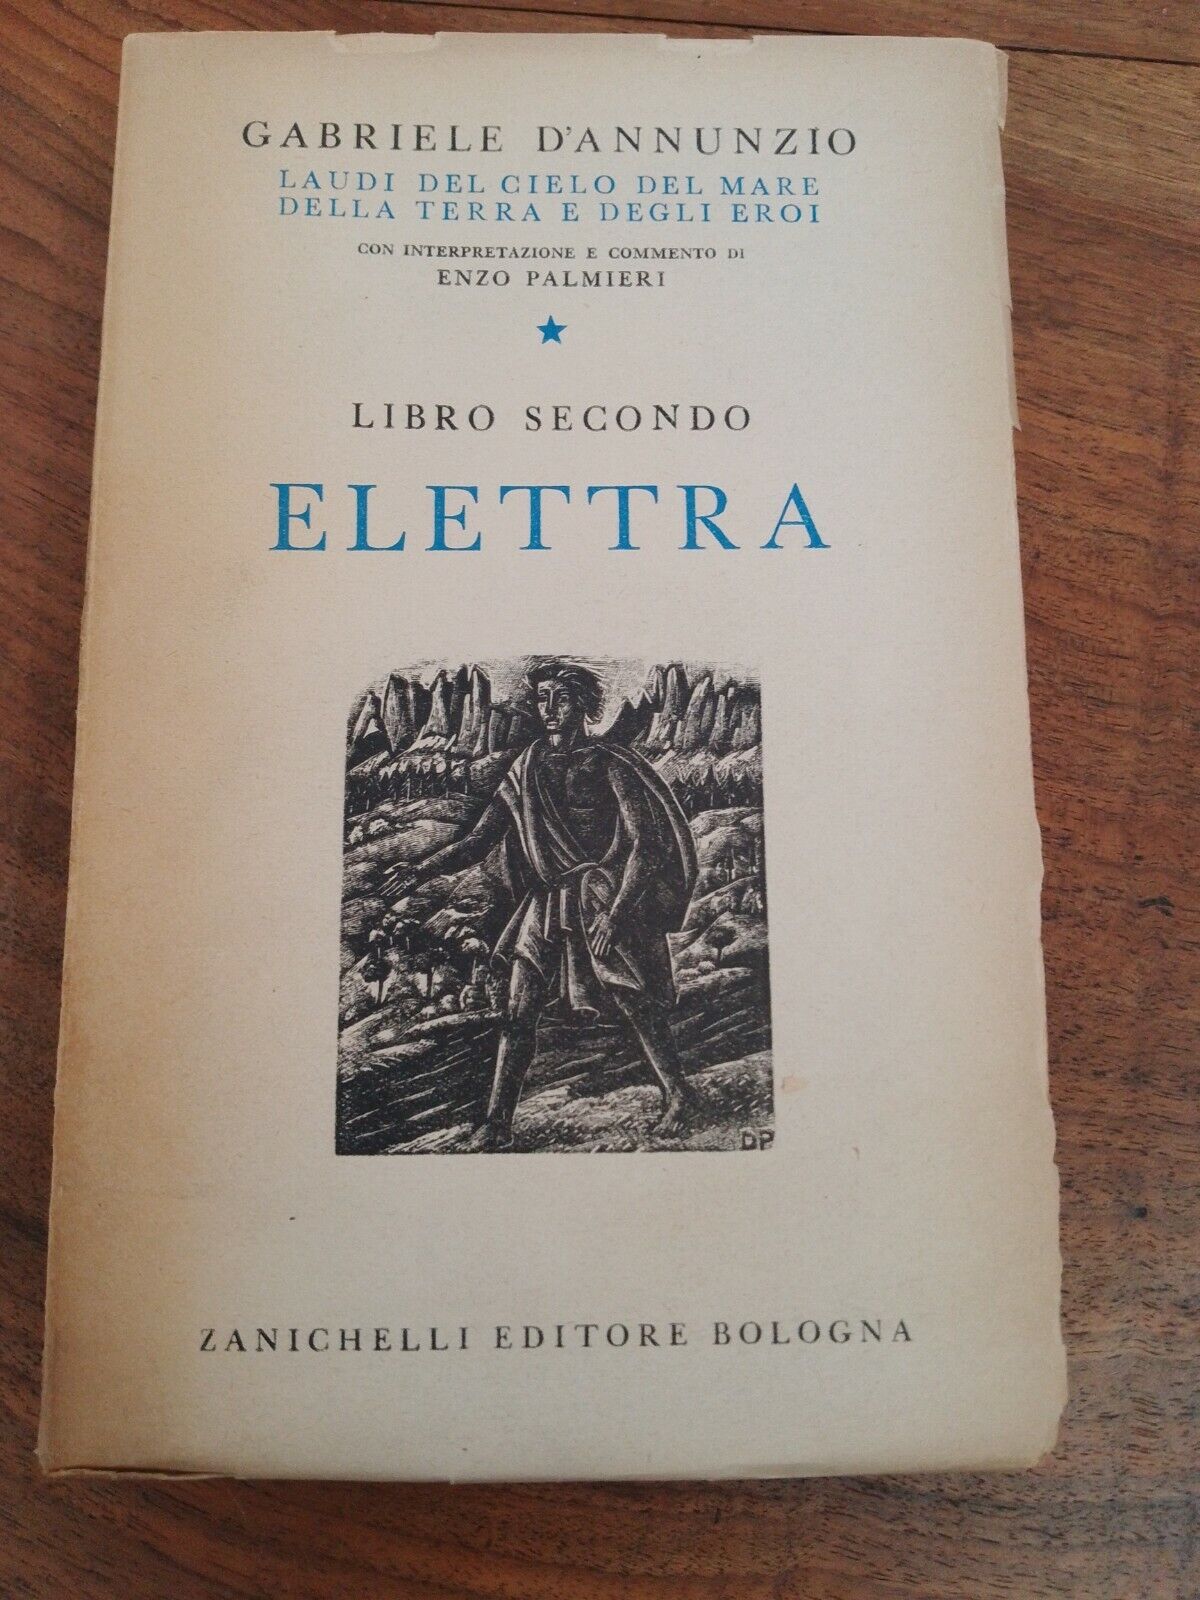 ELETTRA, libro secondo, G. D'ANNUNZIO, ZANICHELLI, 1944